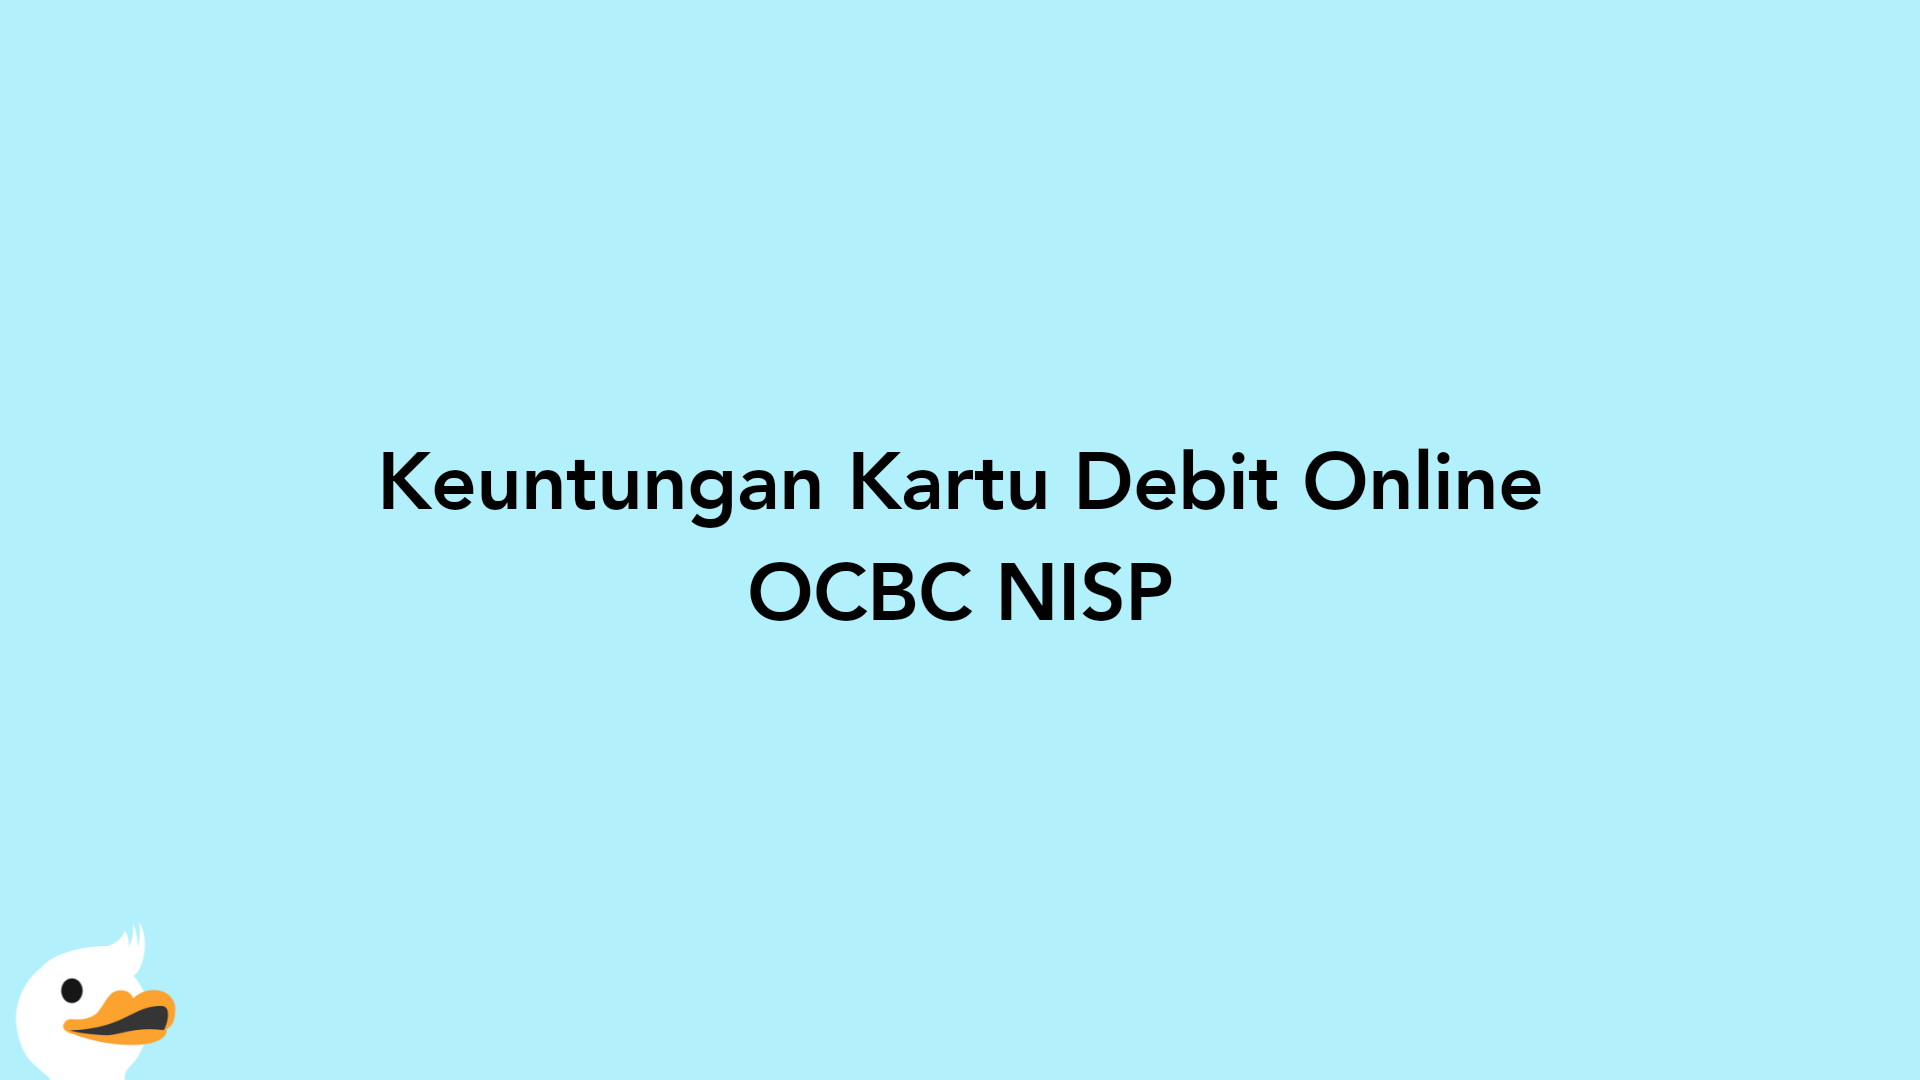 Keuntungan Kartu Debit Online OCBC NISP